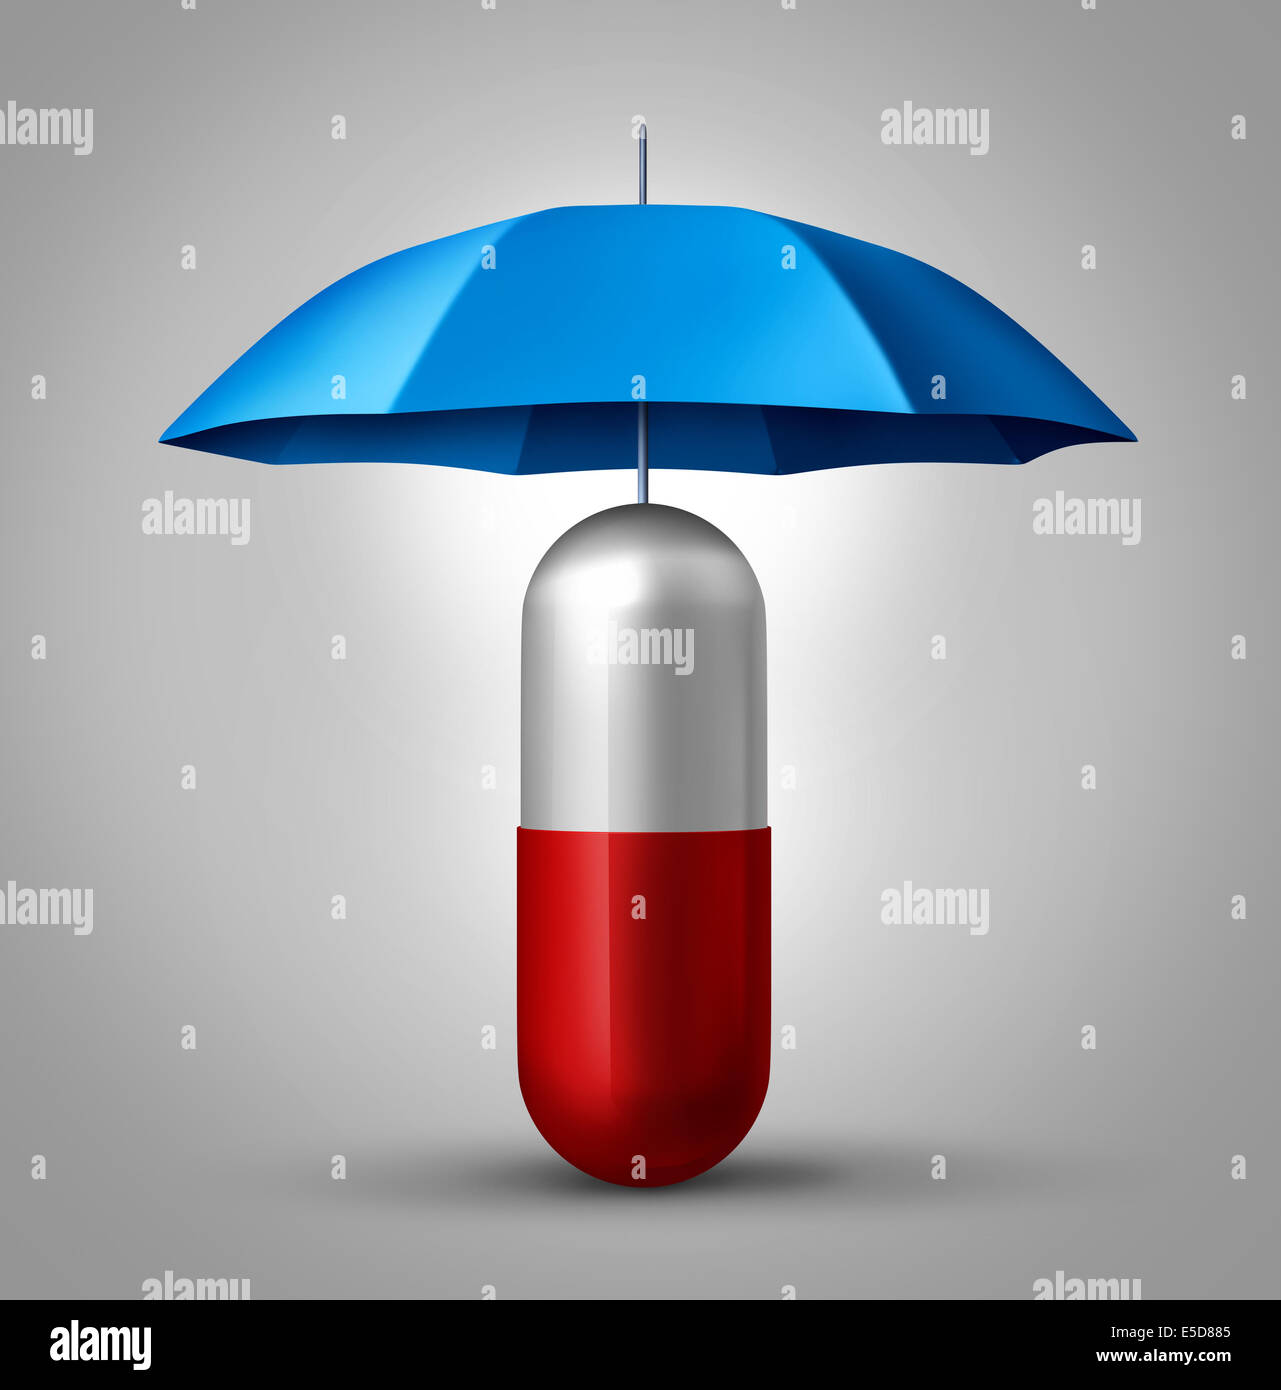 Medizin Schutz und Droge Sicherheitskonzept als Gesundheitswesen Symbol mit einer Kapsel Pille mit einem Regenschirm schützt das Pharma-Symbol. Stockfoto